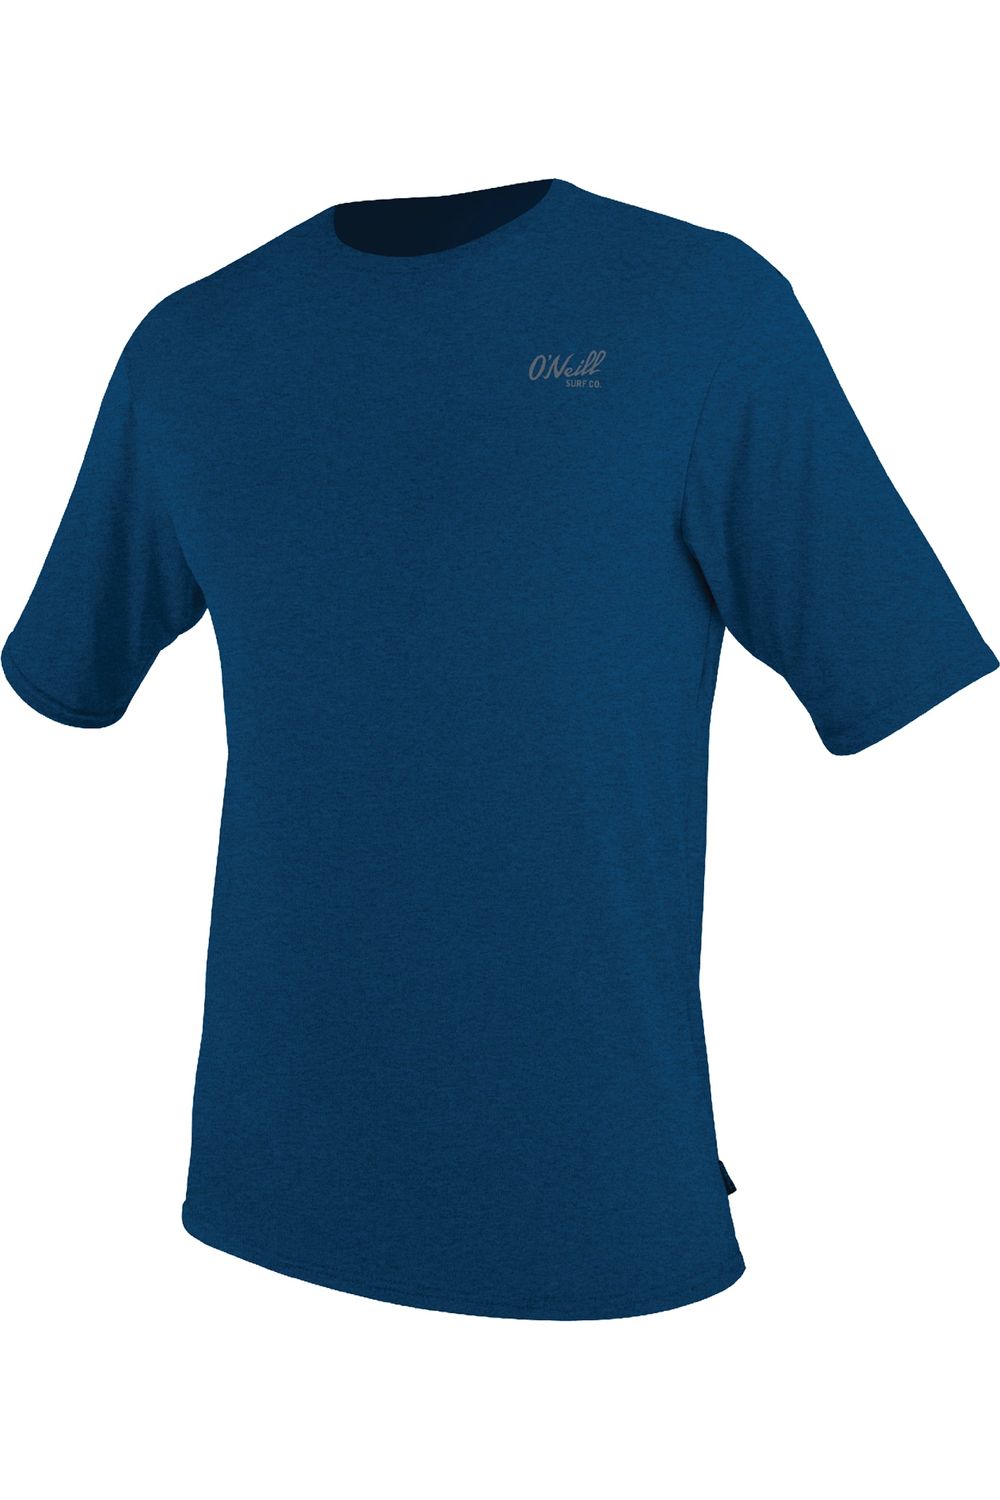 O'Neill Blueprint Ss Sun Shirt Wetsuit Deep Sea